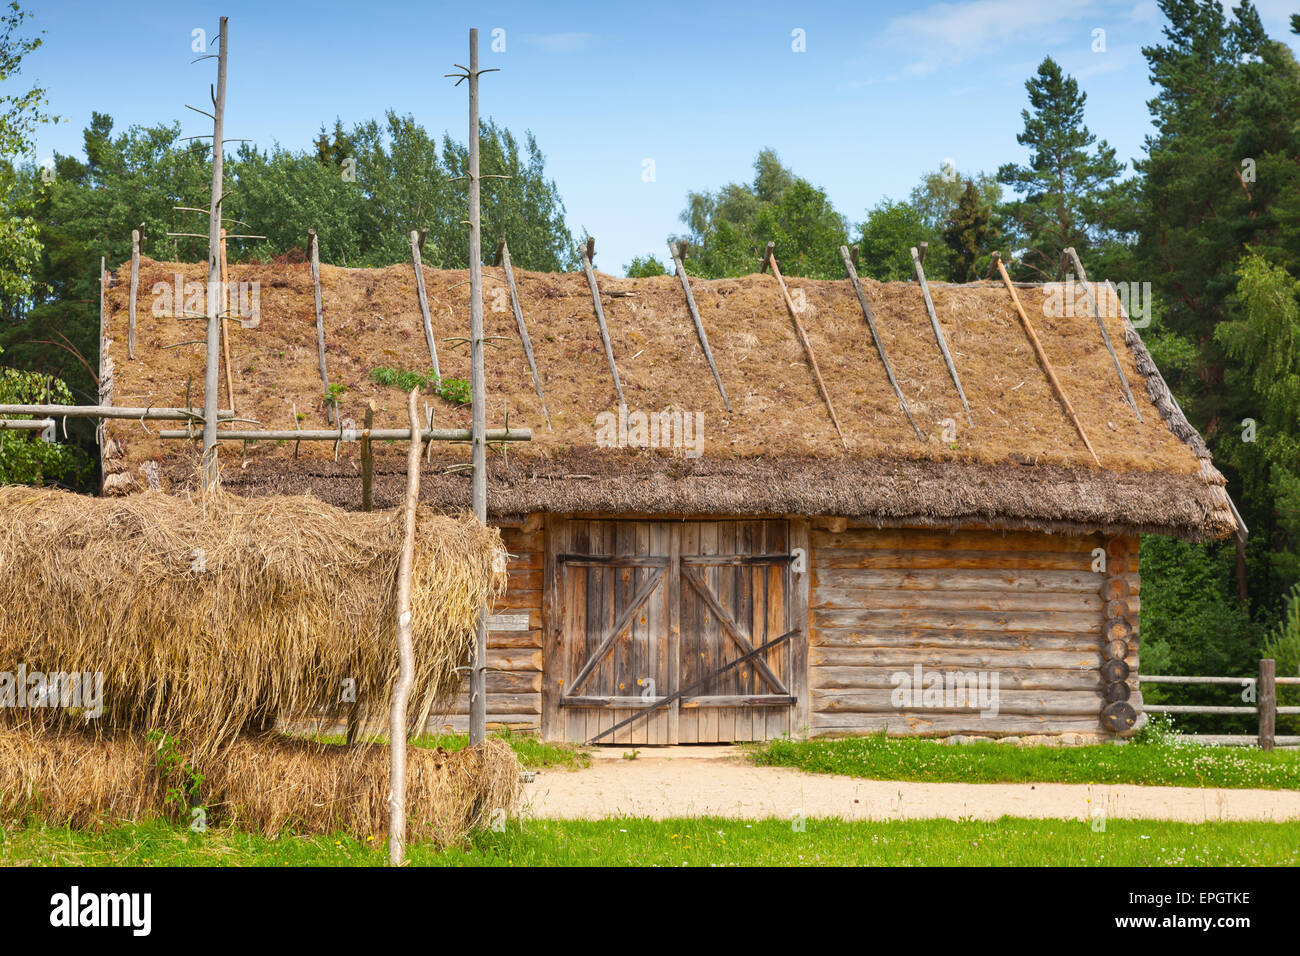 Russische ländliche Holzbaukunst beispielsweise im freien Heu trocknen in der Nähe von alte hölzerne Scheune mit verschlossenen Tor Stockfoto